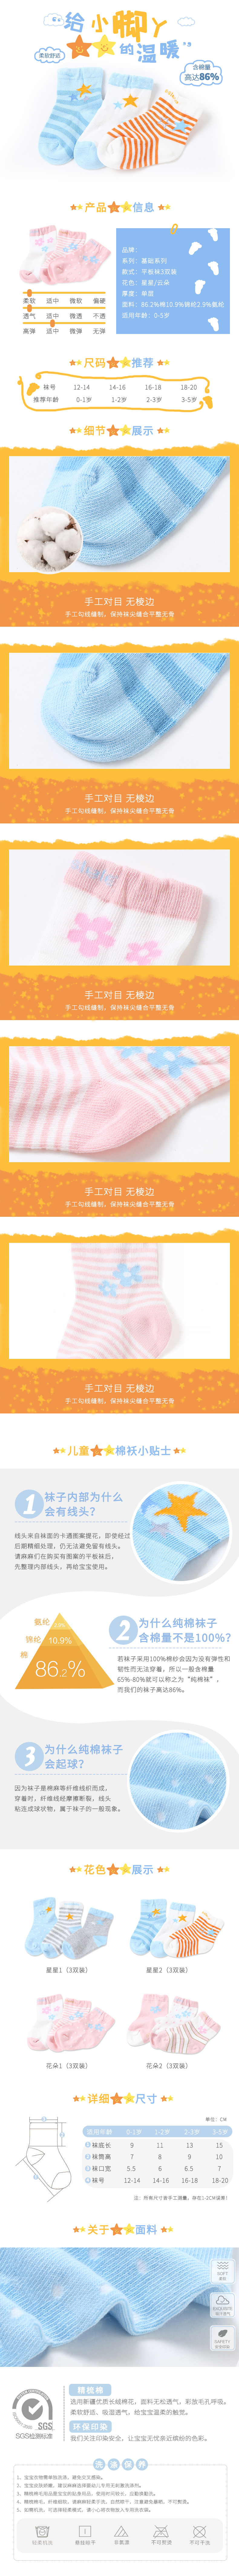 淘宝美工慧子子简约 可爱  母婴 婴儿 用品  袜子  详情页作品